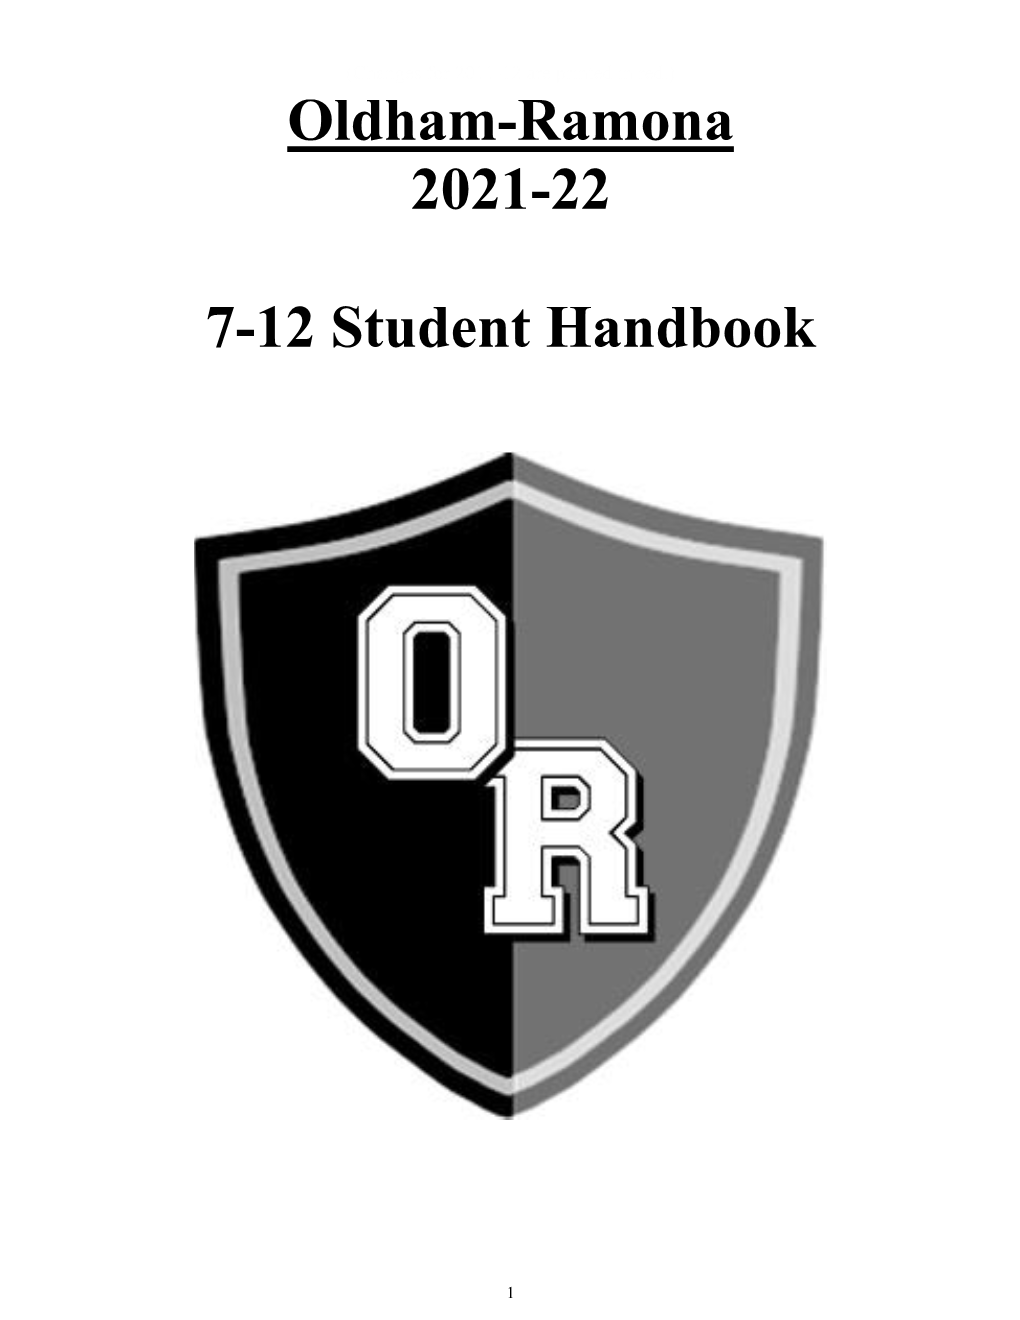 Oldham-Ramona 2021-22 7-12 Student Handbook